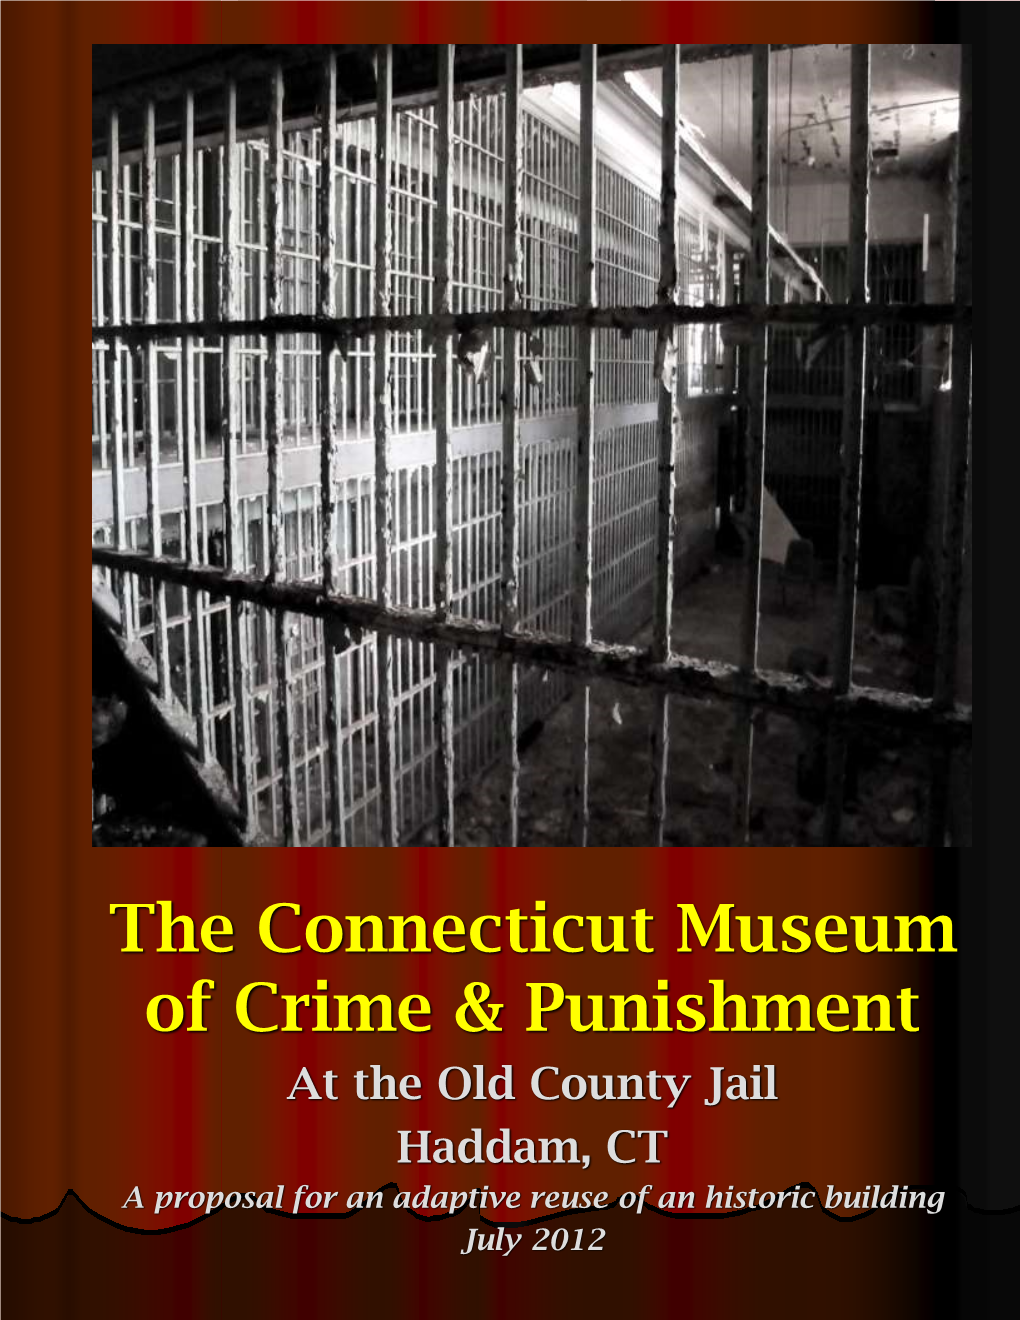 The Connecticut Museum of Crime & Punishment